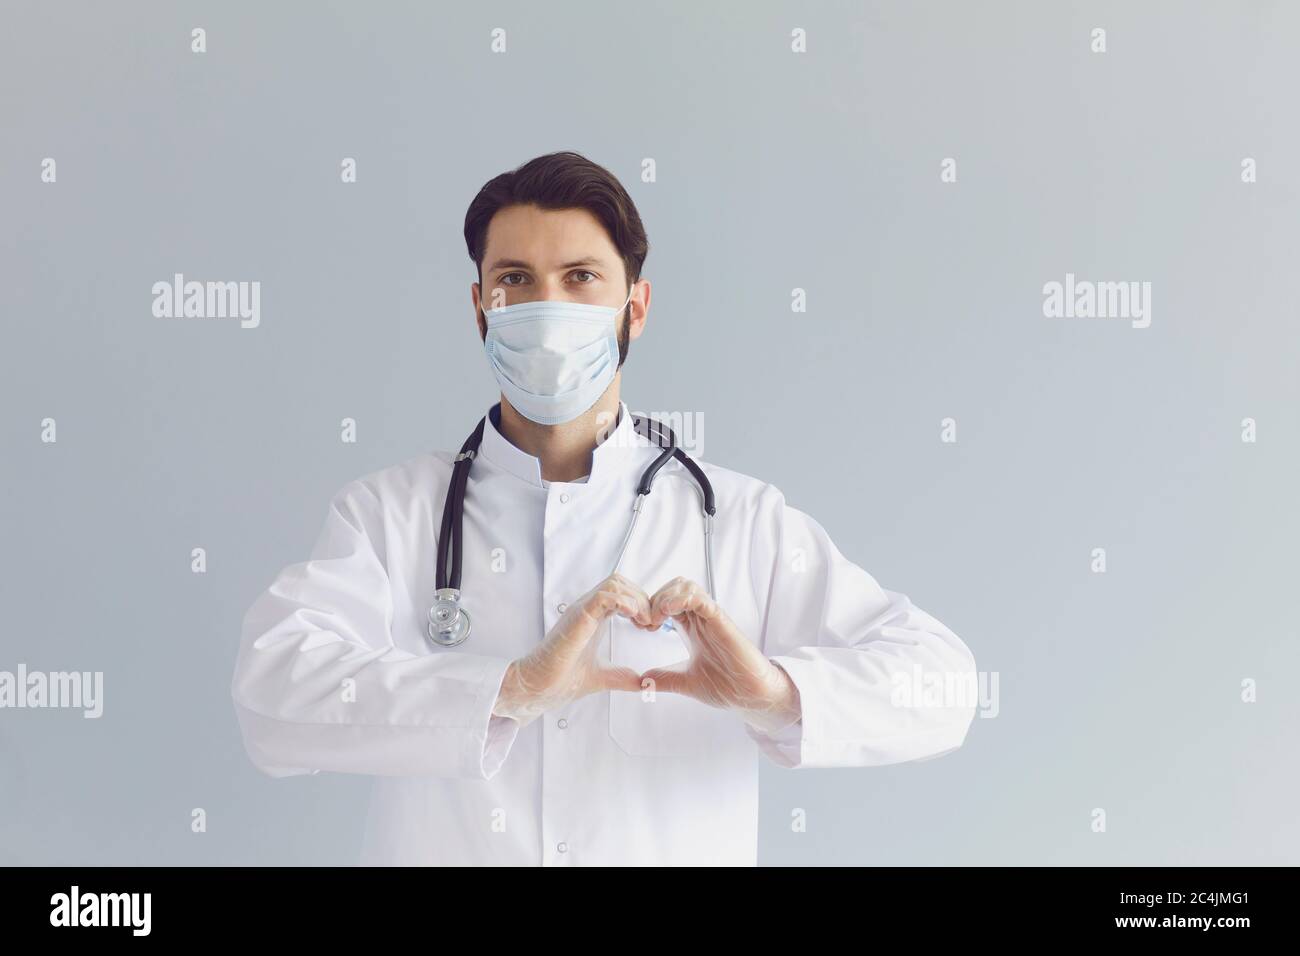 Jeune homme médecin dans un masque médical montrant un geste cardiaque sur fond gris. Santé cardiovasculaire, organisme de bienfaisance ou don Banque D'Images